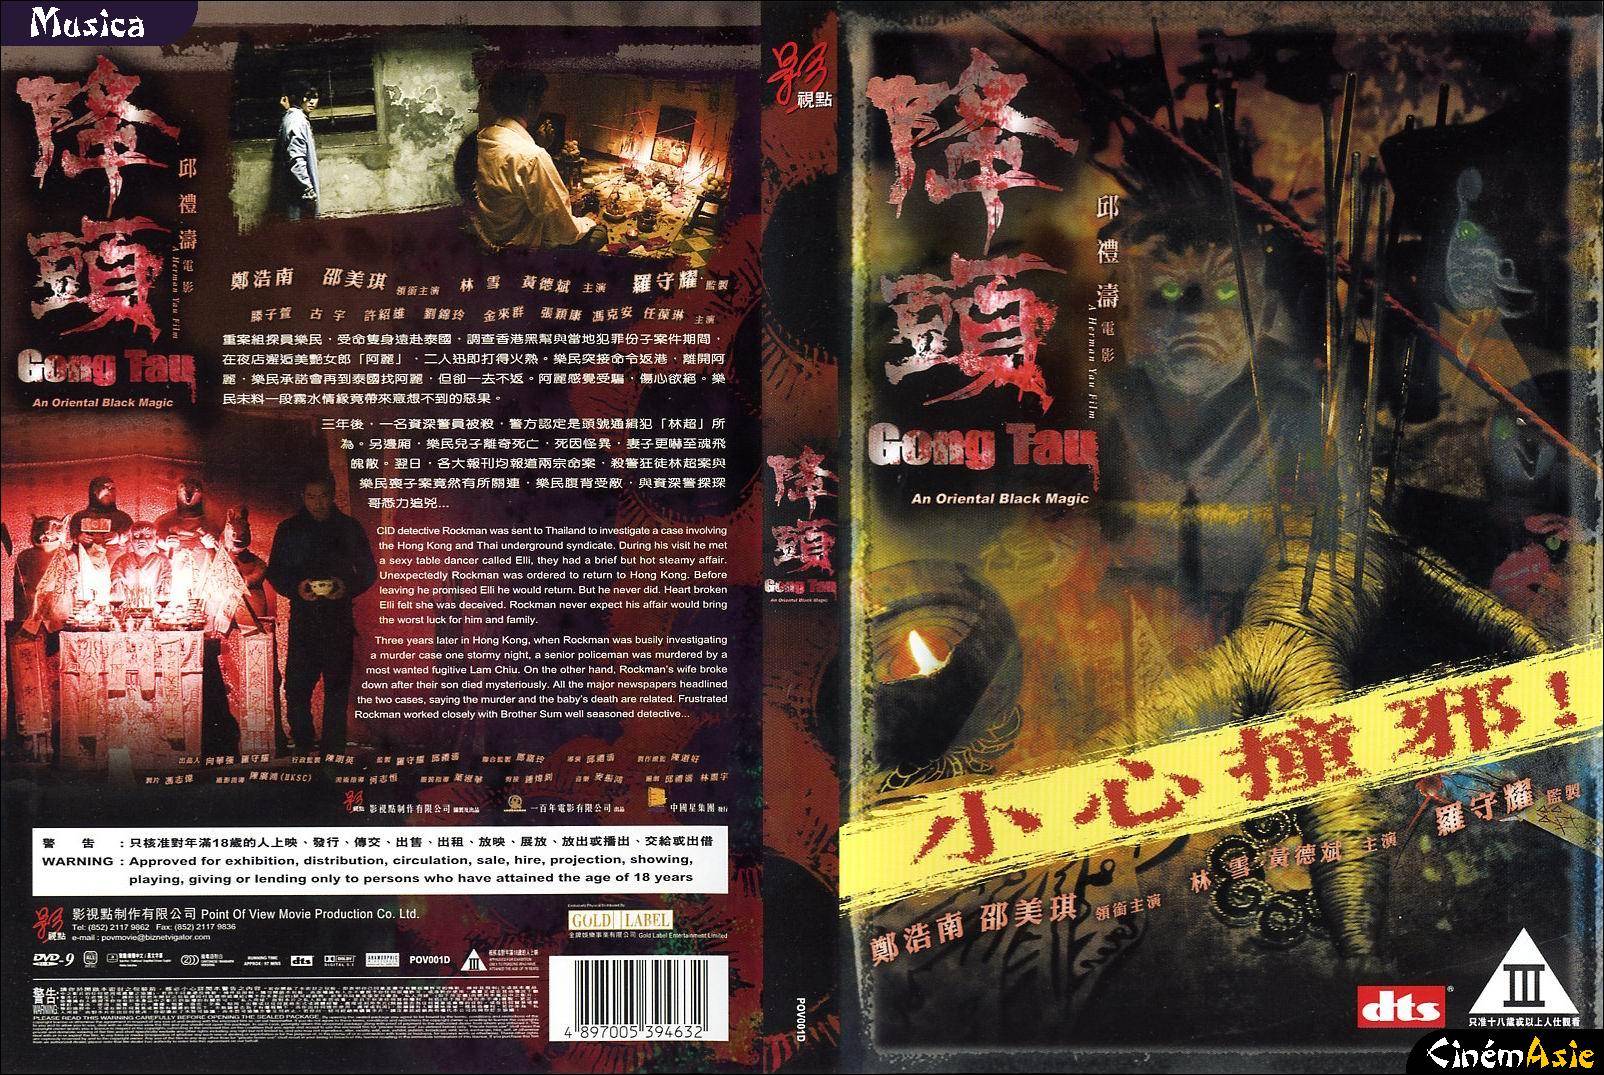 Gong Tau: An Oriental Black Magic (2007)